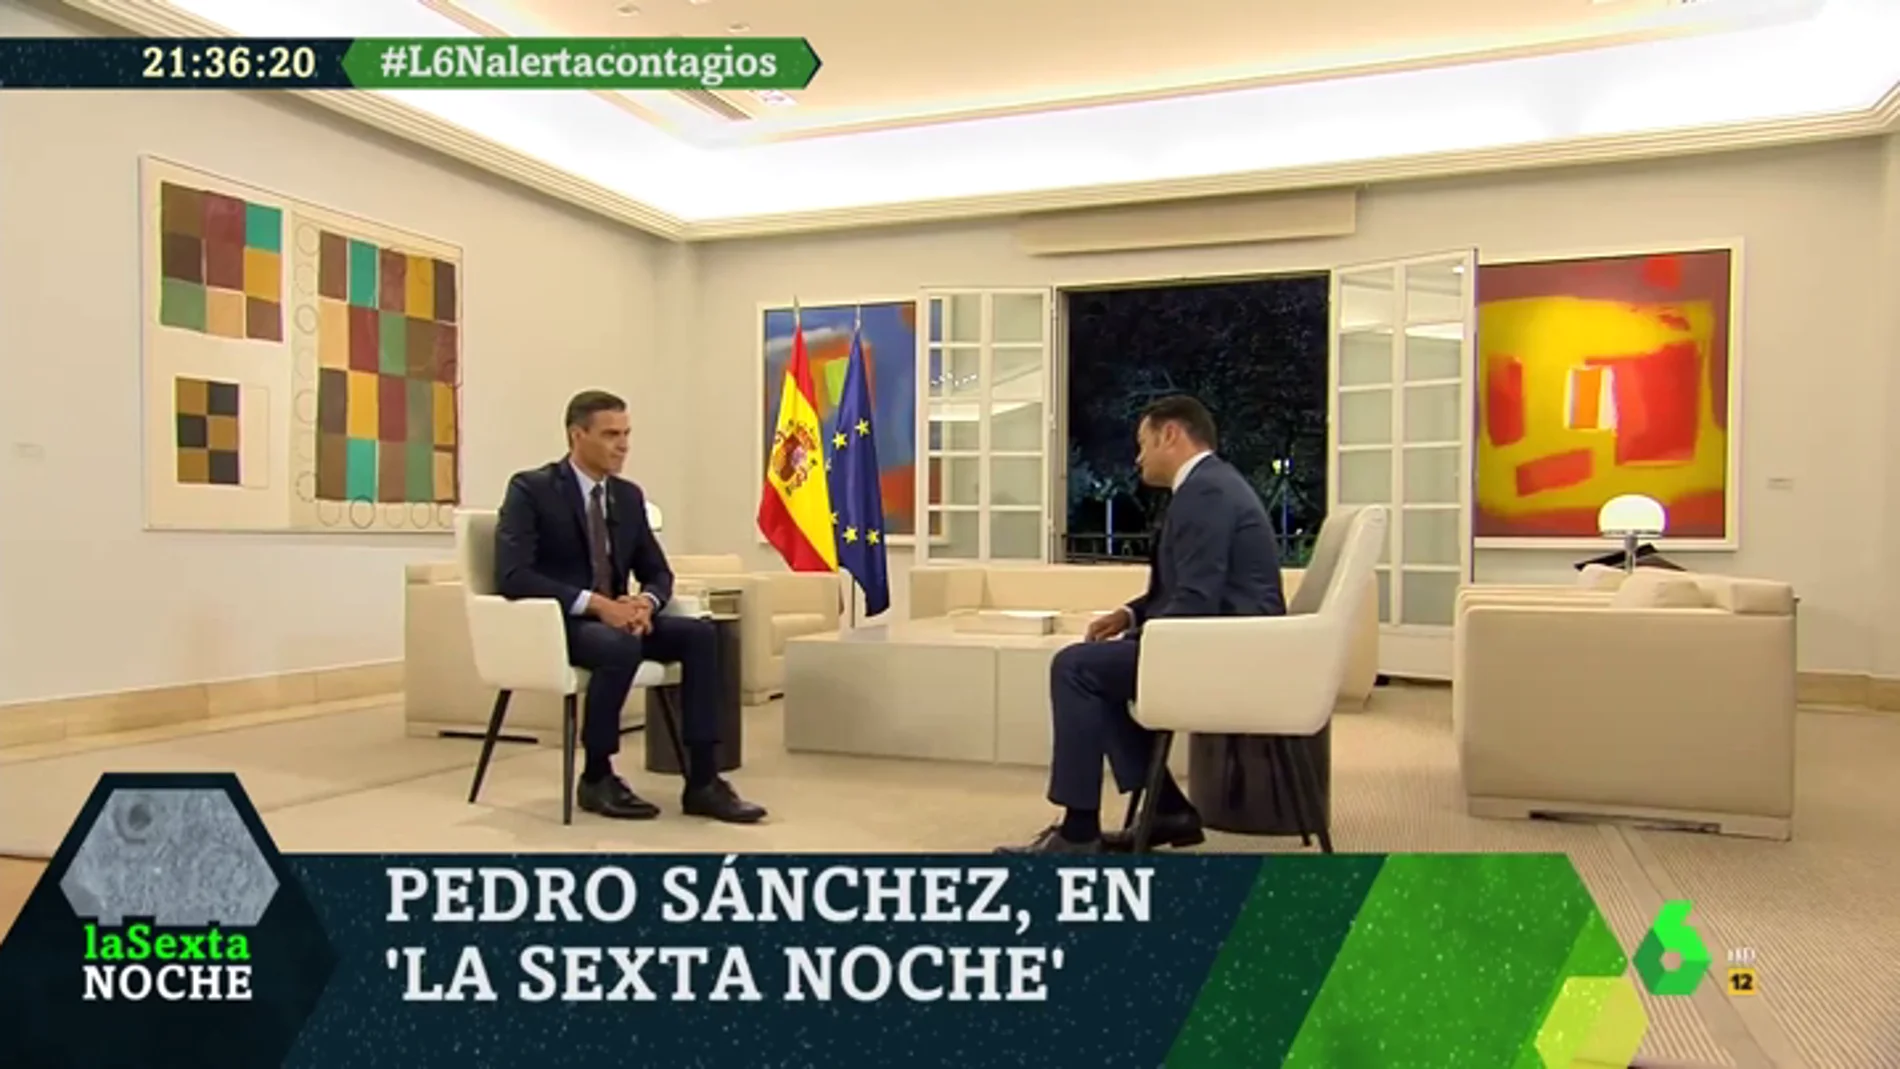 La entrevista completa a Pedro Sánchez en laSexta Noche: "Vamos a tener semanas complicadas, pero estamos mejor preparados"